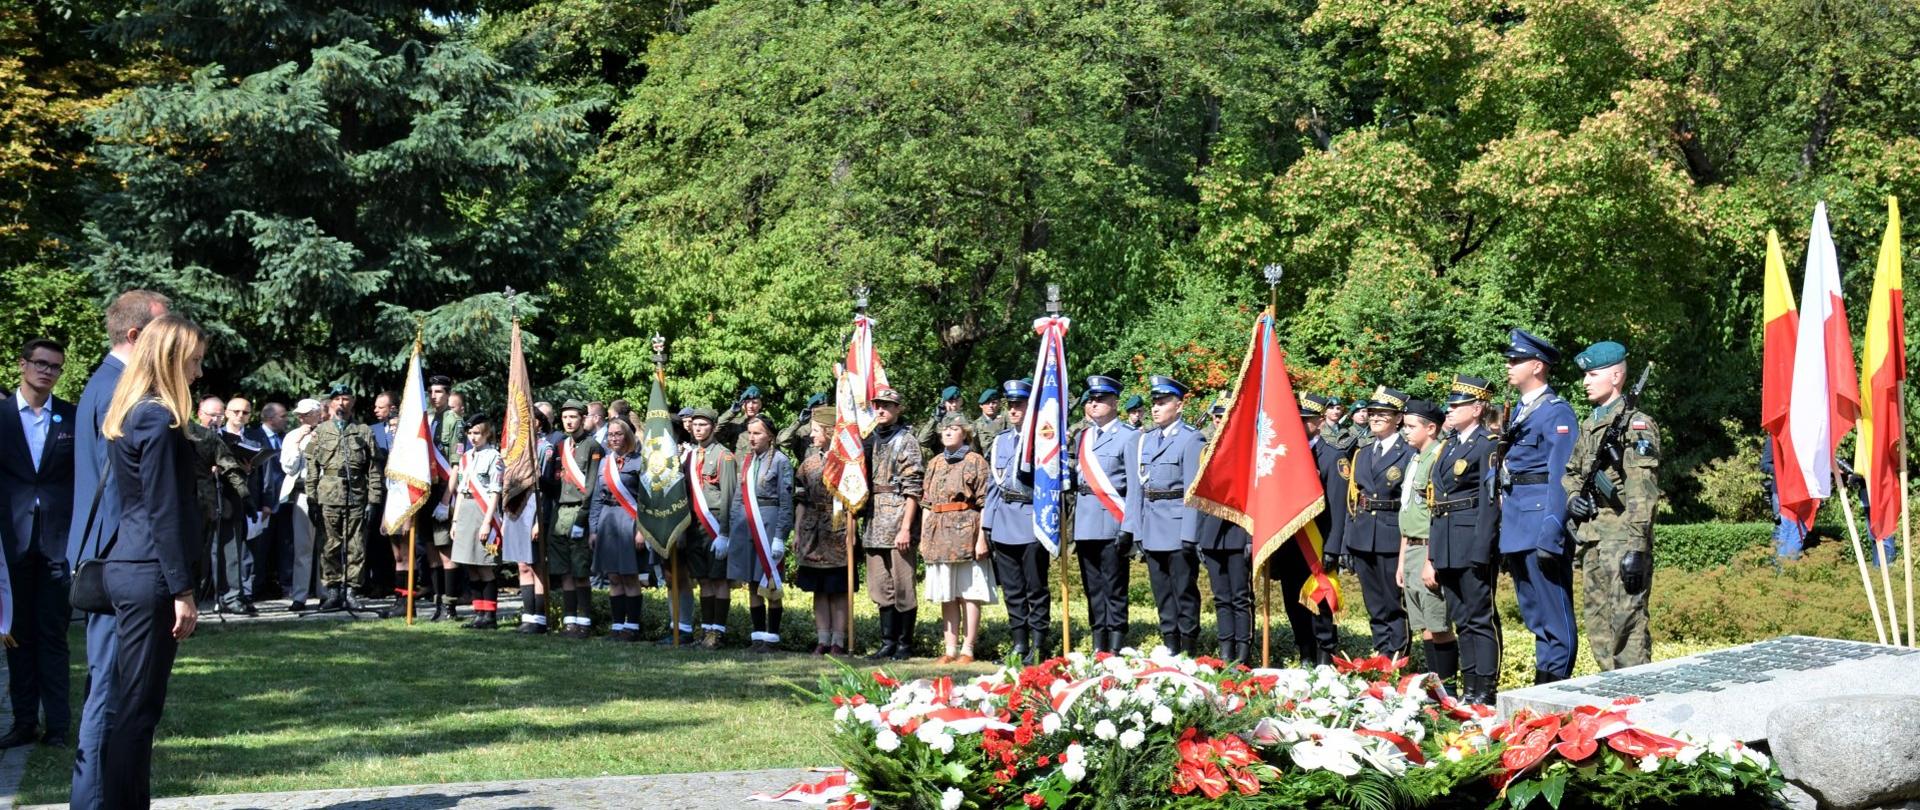 Pamięci powstańców warszawskich 1 sierpnia 1944 r.
